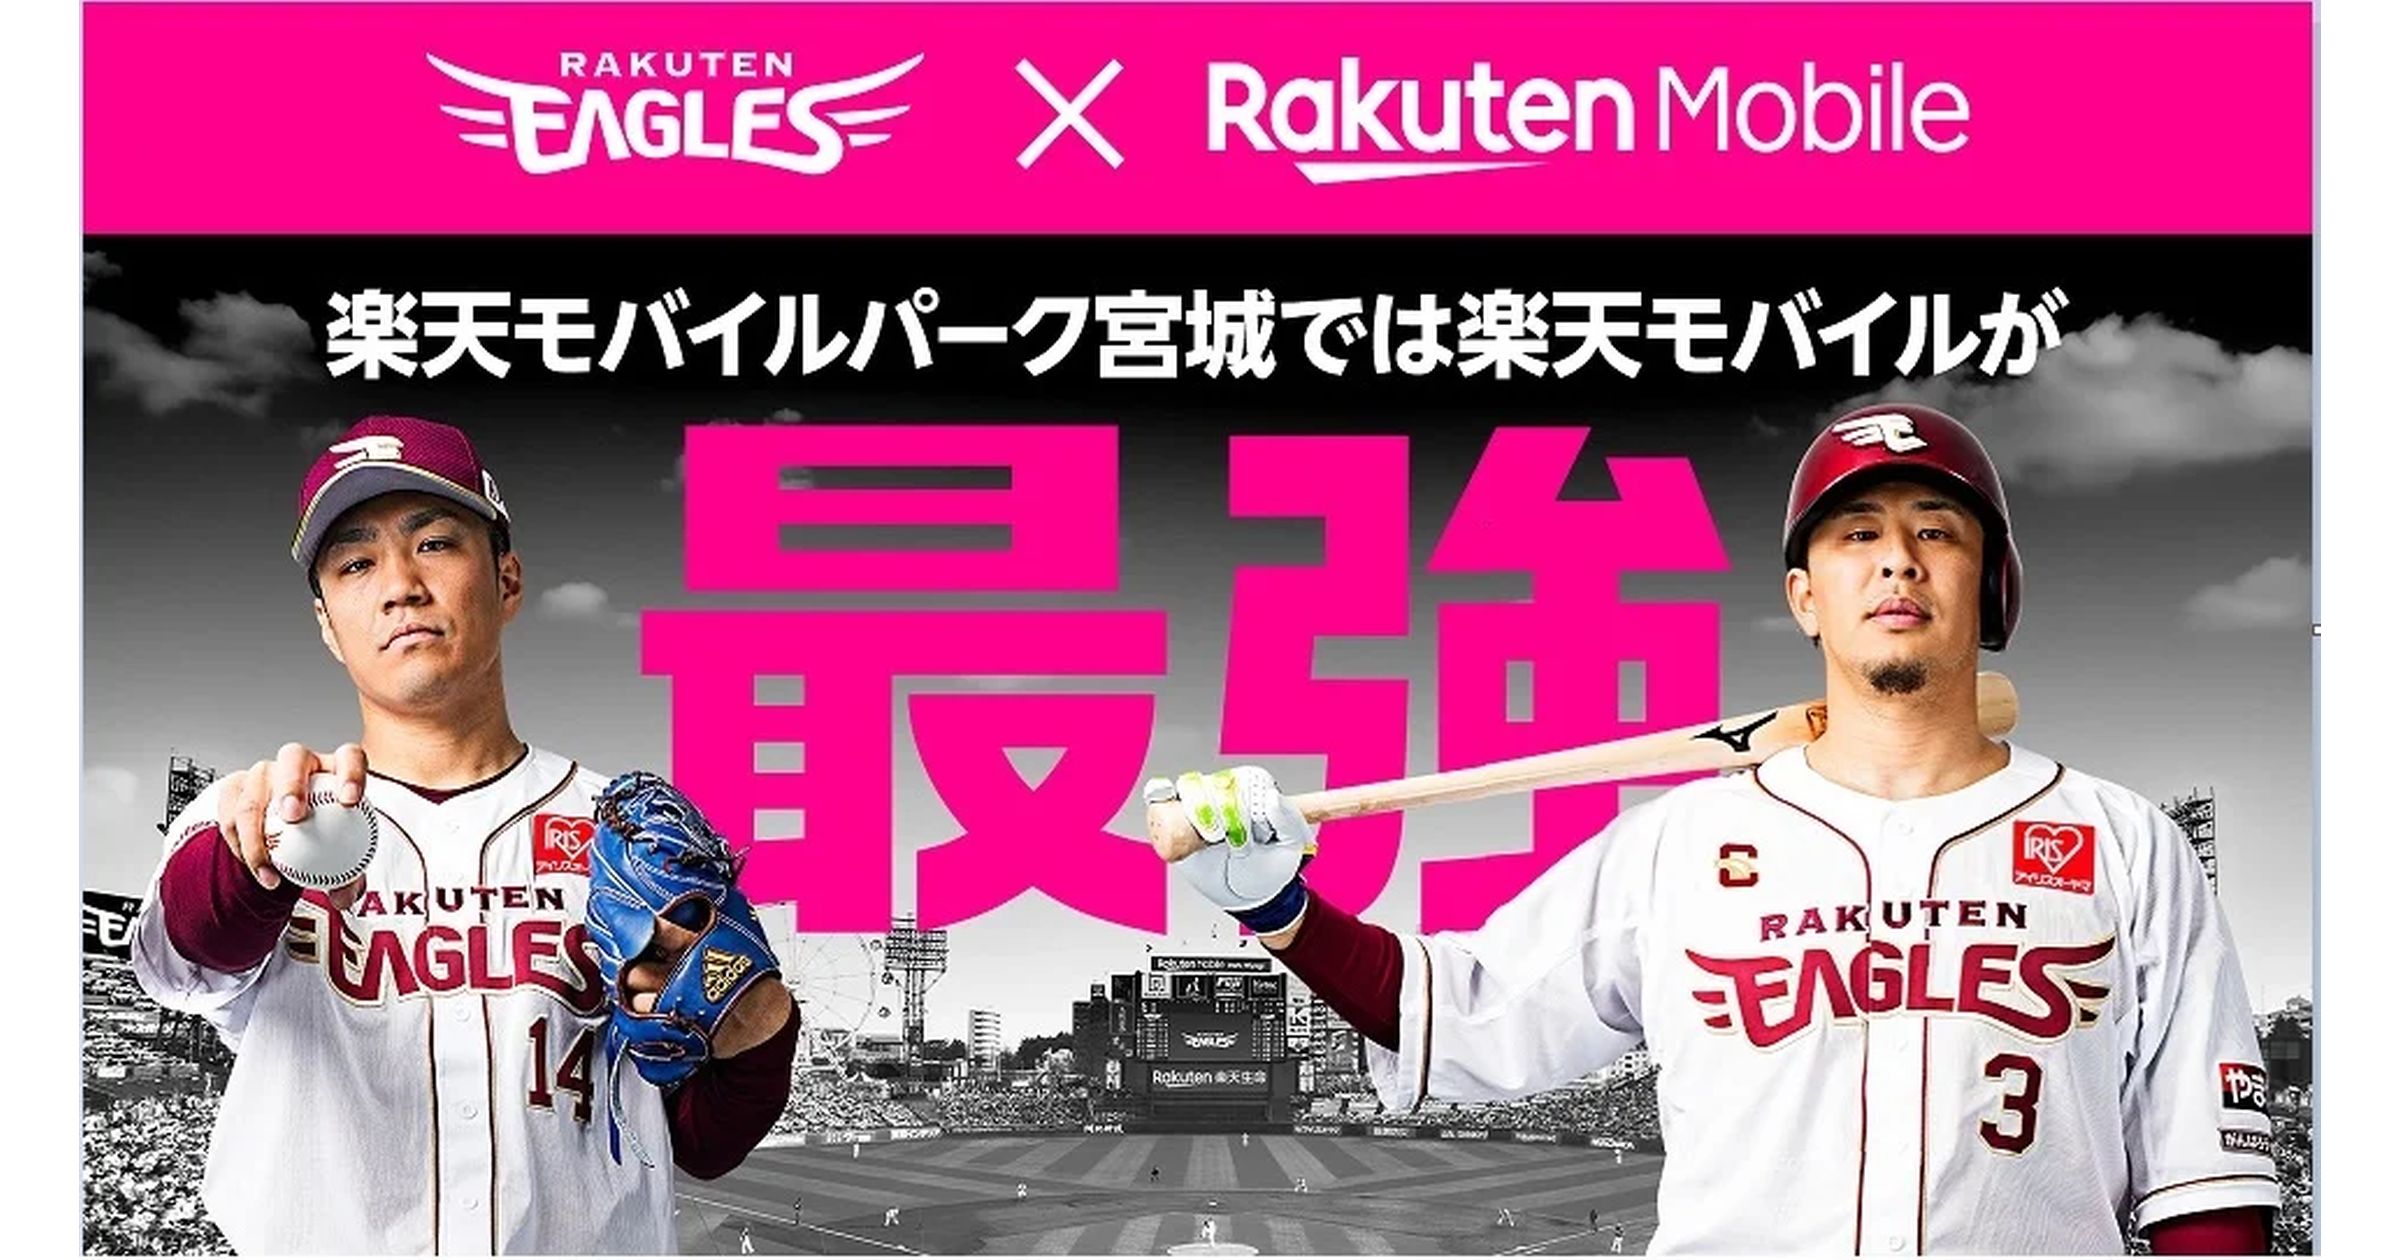 楽天モバイルの「Rakuten最強プラン」が楽天モバイルパーク宮城での観戦がおトクになるキャンペーン実施